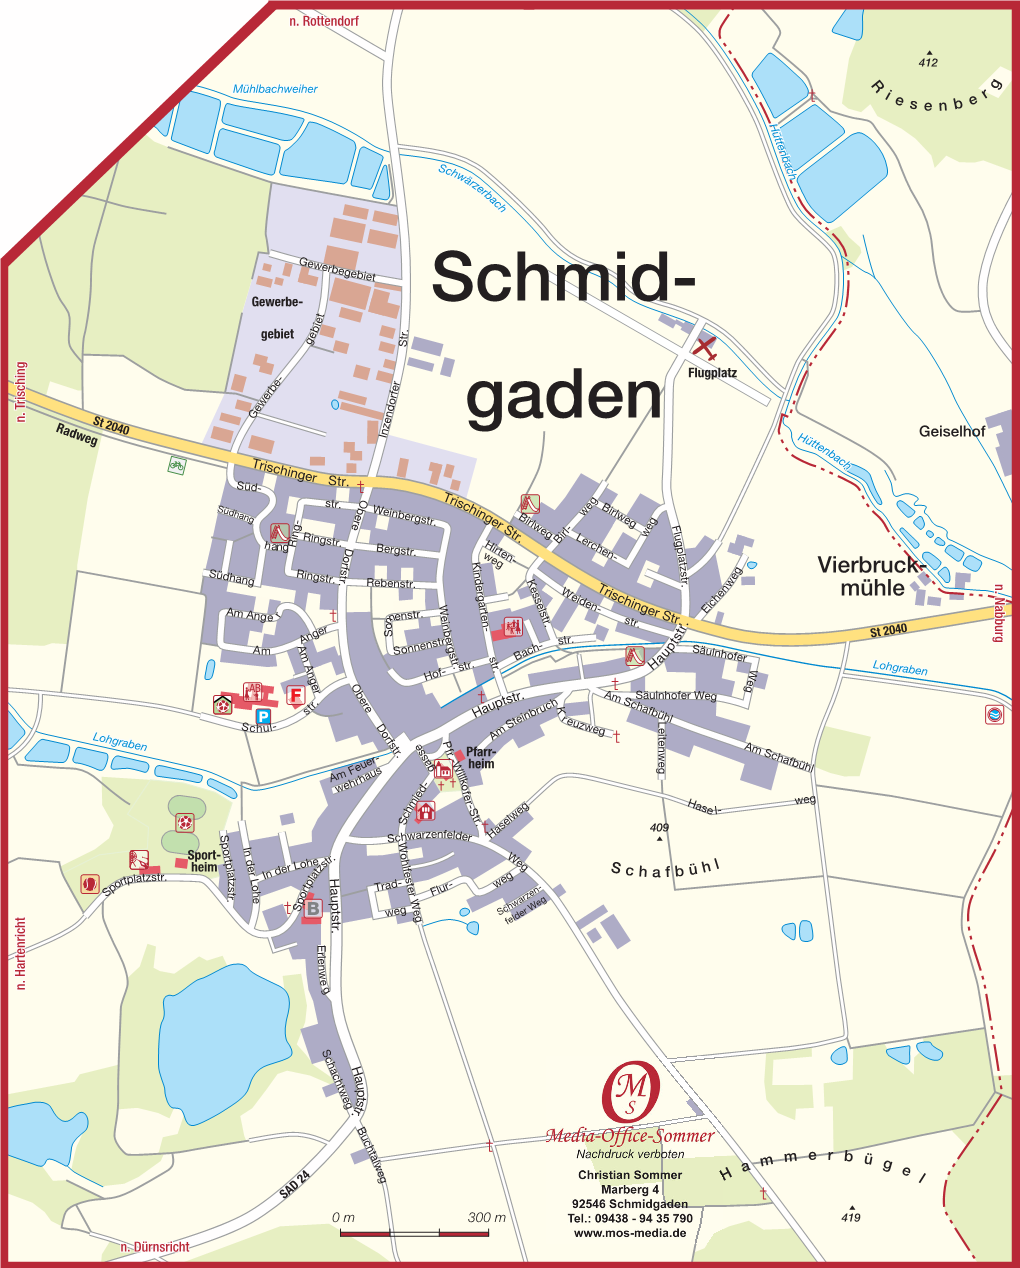 Schmid- Gaden Böhmische Knoten Schwärzer- Mühle Freiung 6 Pfaffenschlagsch Trisching